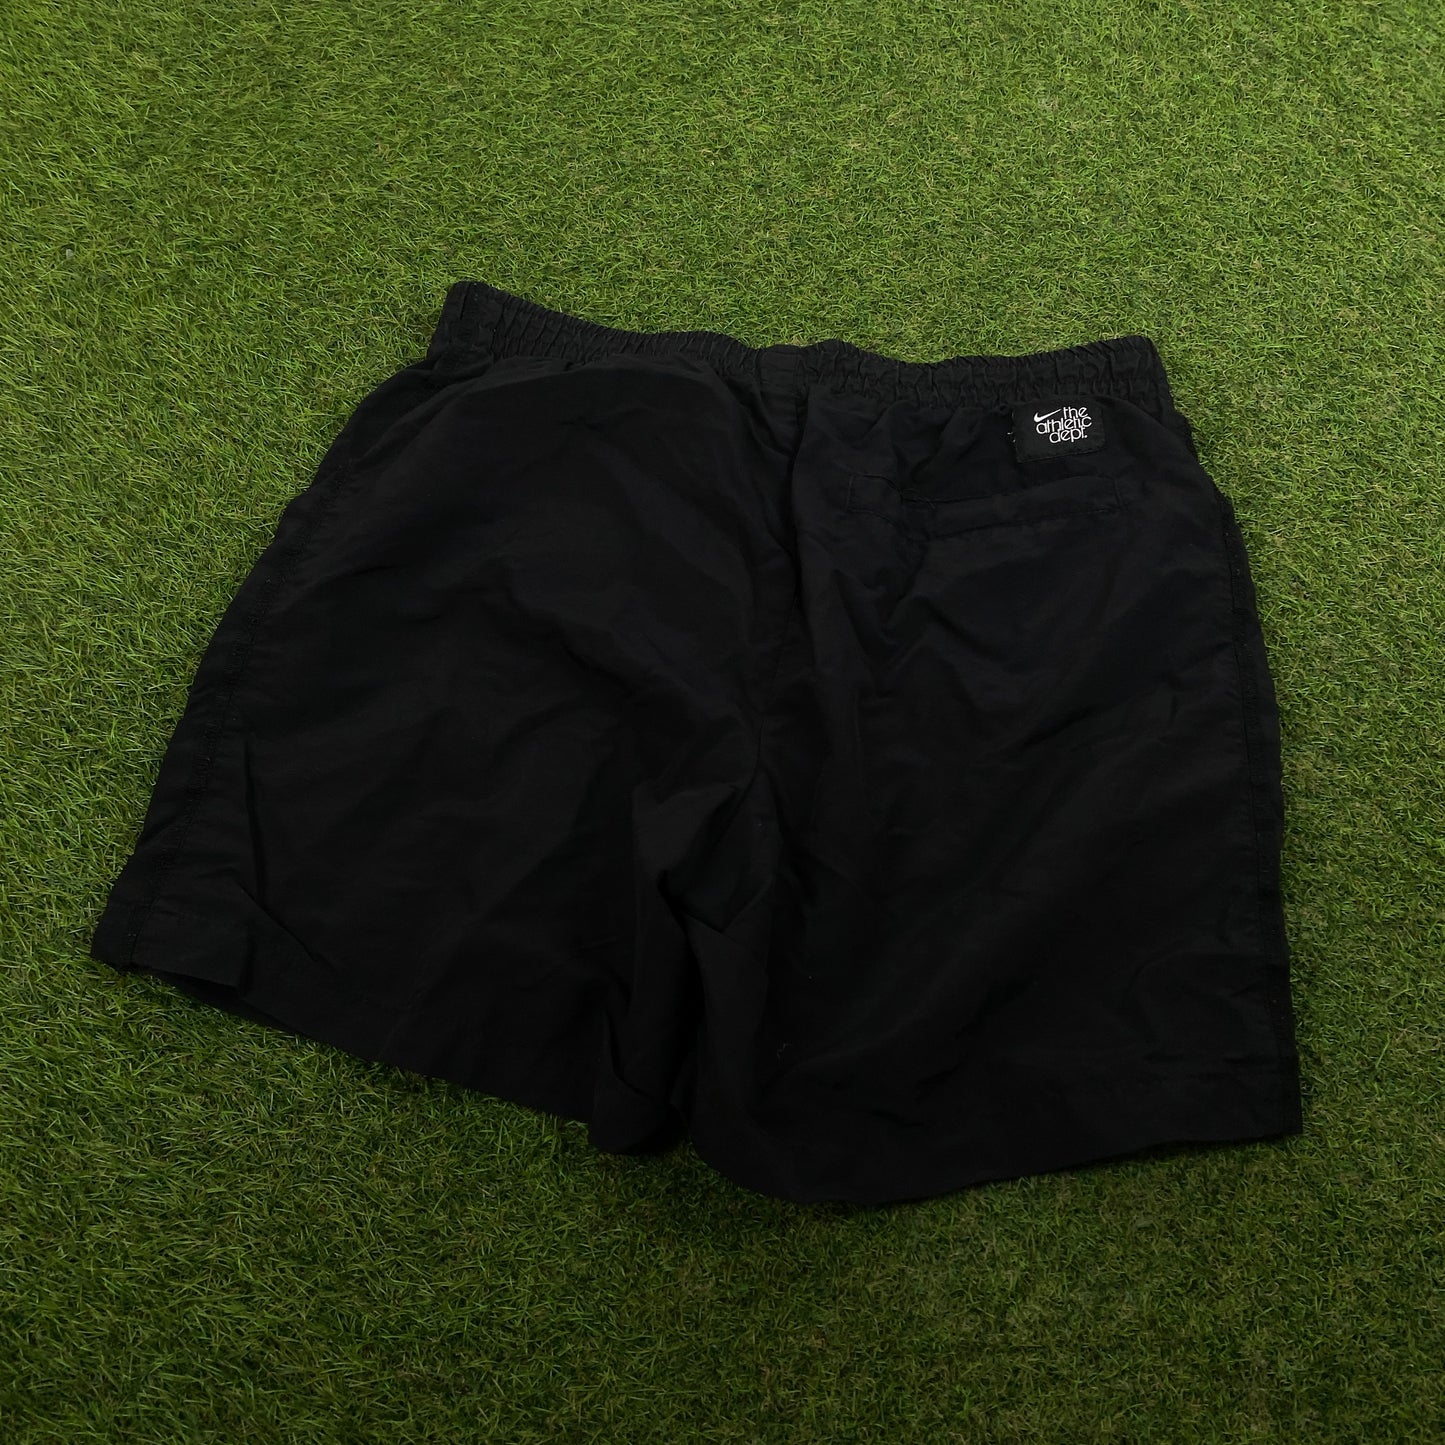 00s Nike Shorts Black Medium